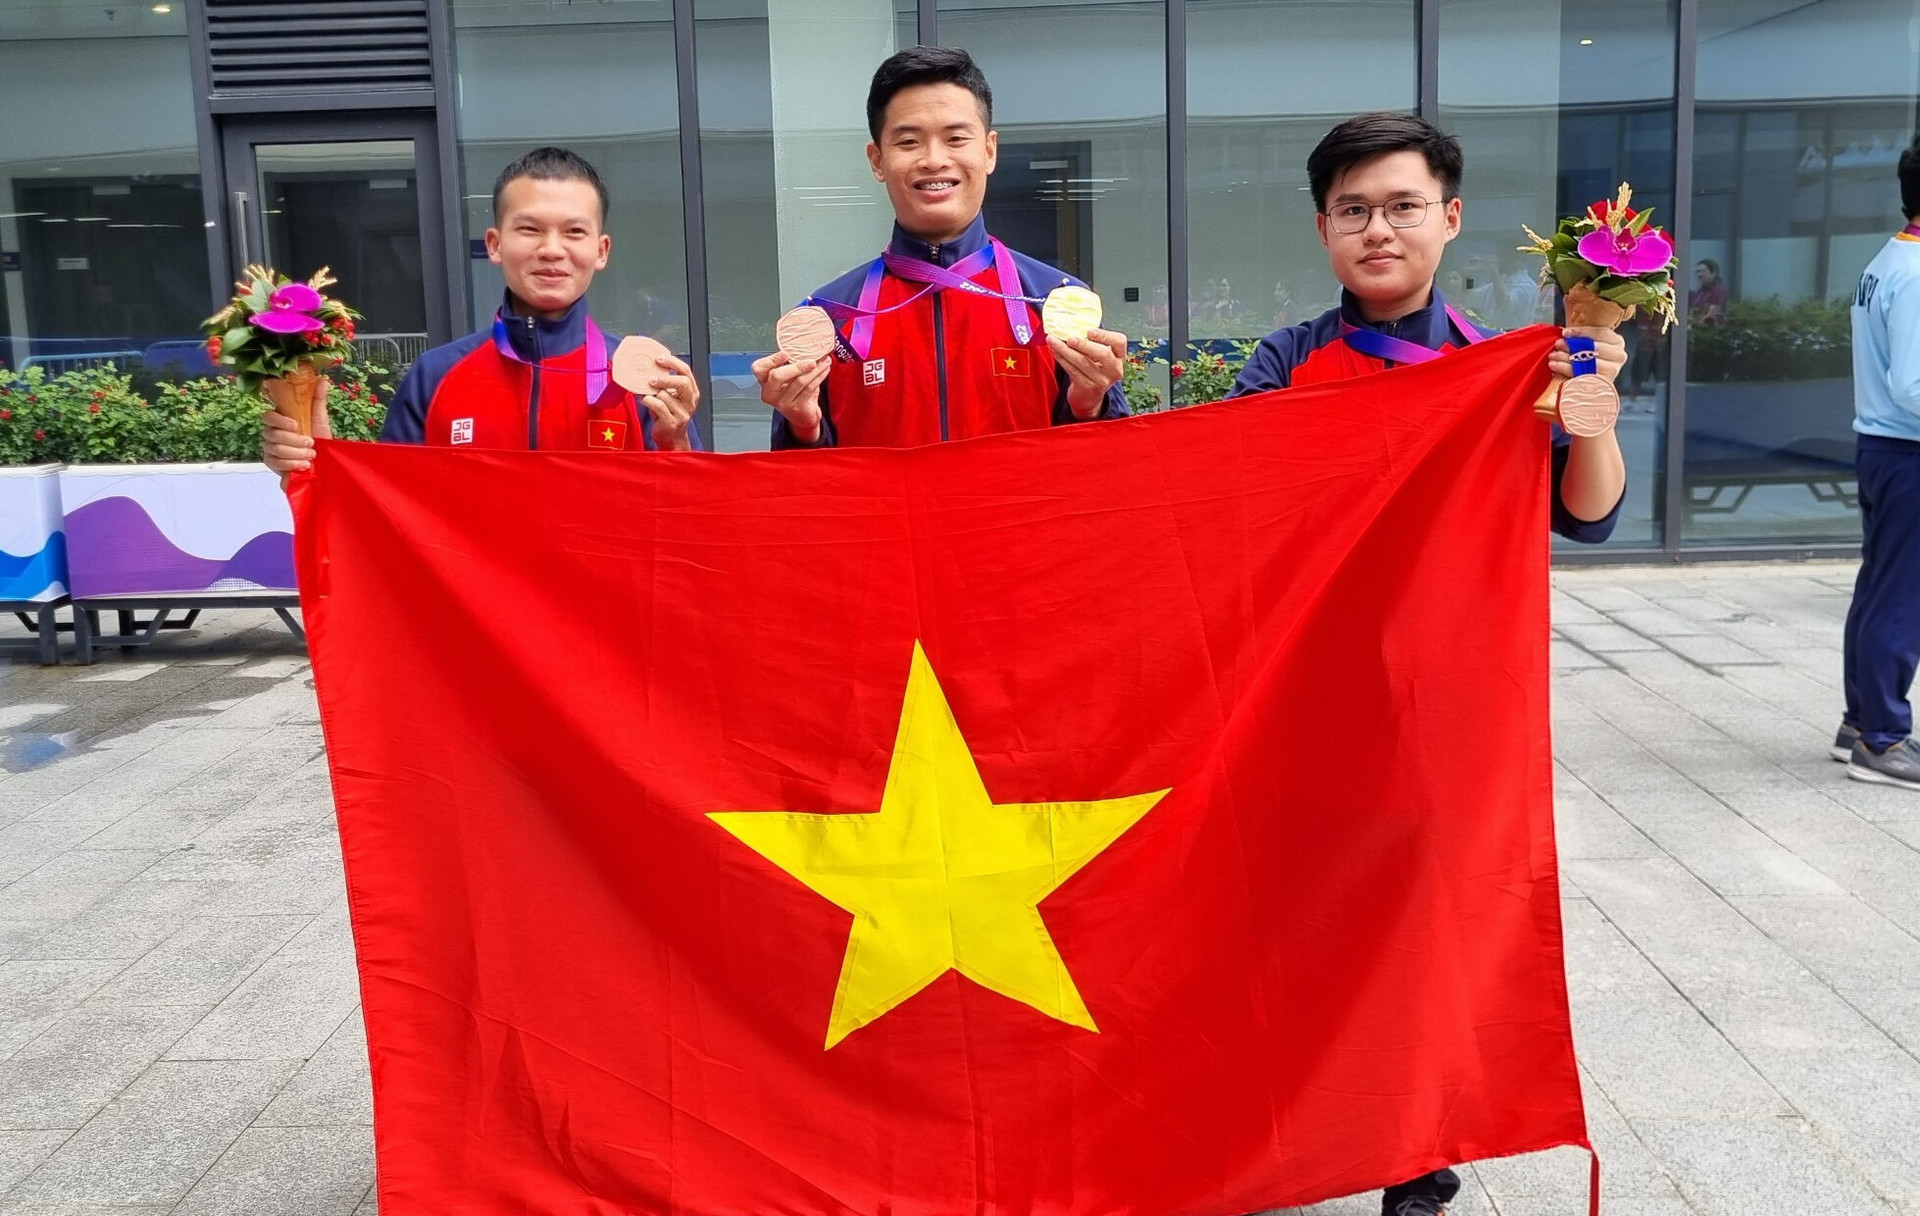 Xạ thủ Phạm Quang Huy (giữa) giành huy chương vàng ASIAD 19 nội dung 10m súng ngắn hơi và HCĐ nội dung đồng đội. (Ảnh: Tam Ninh)